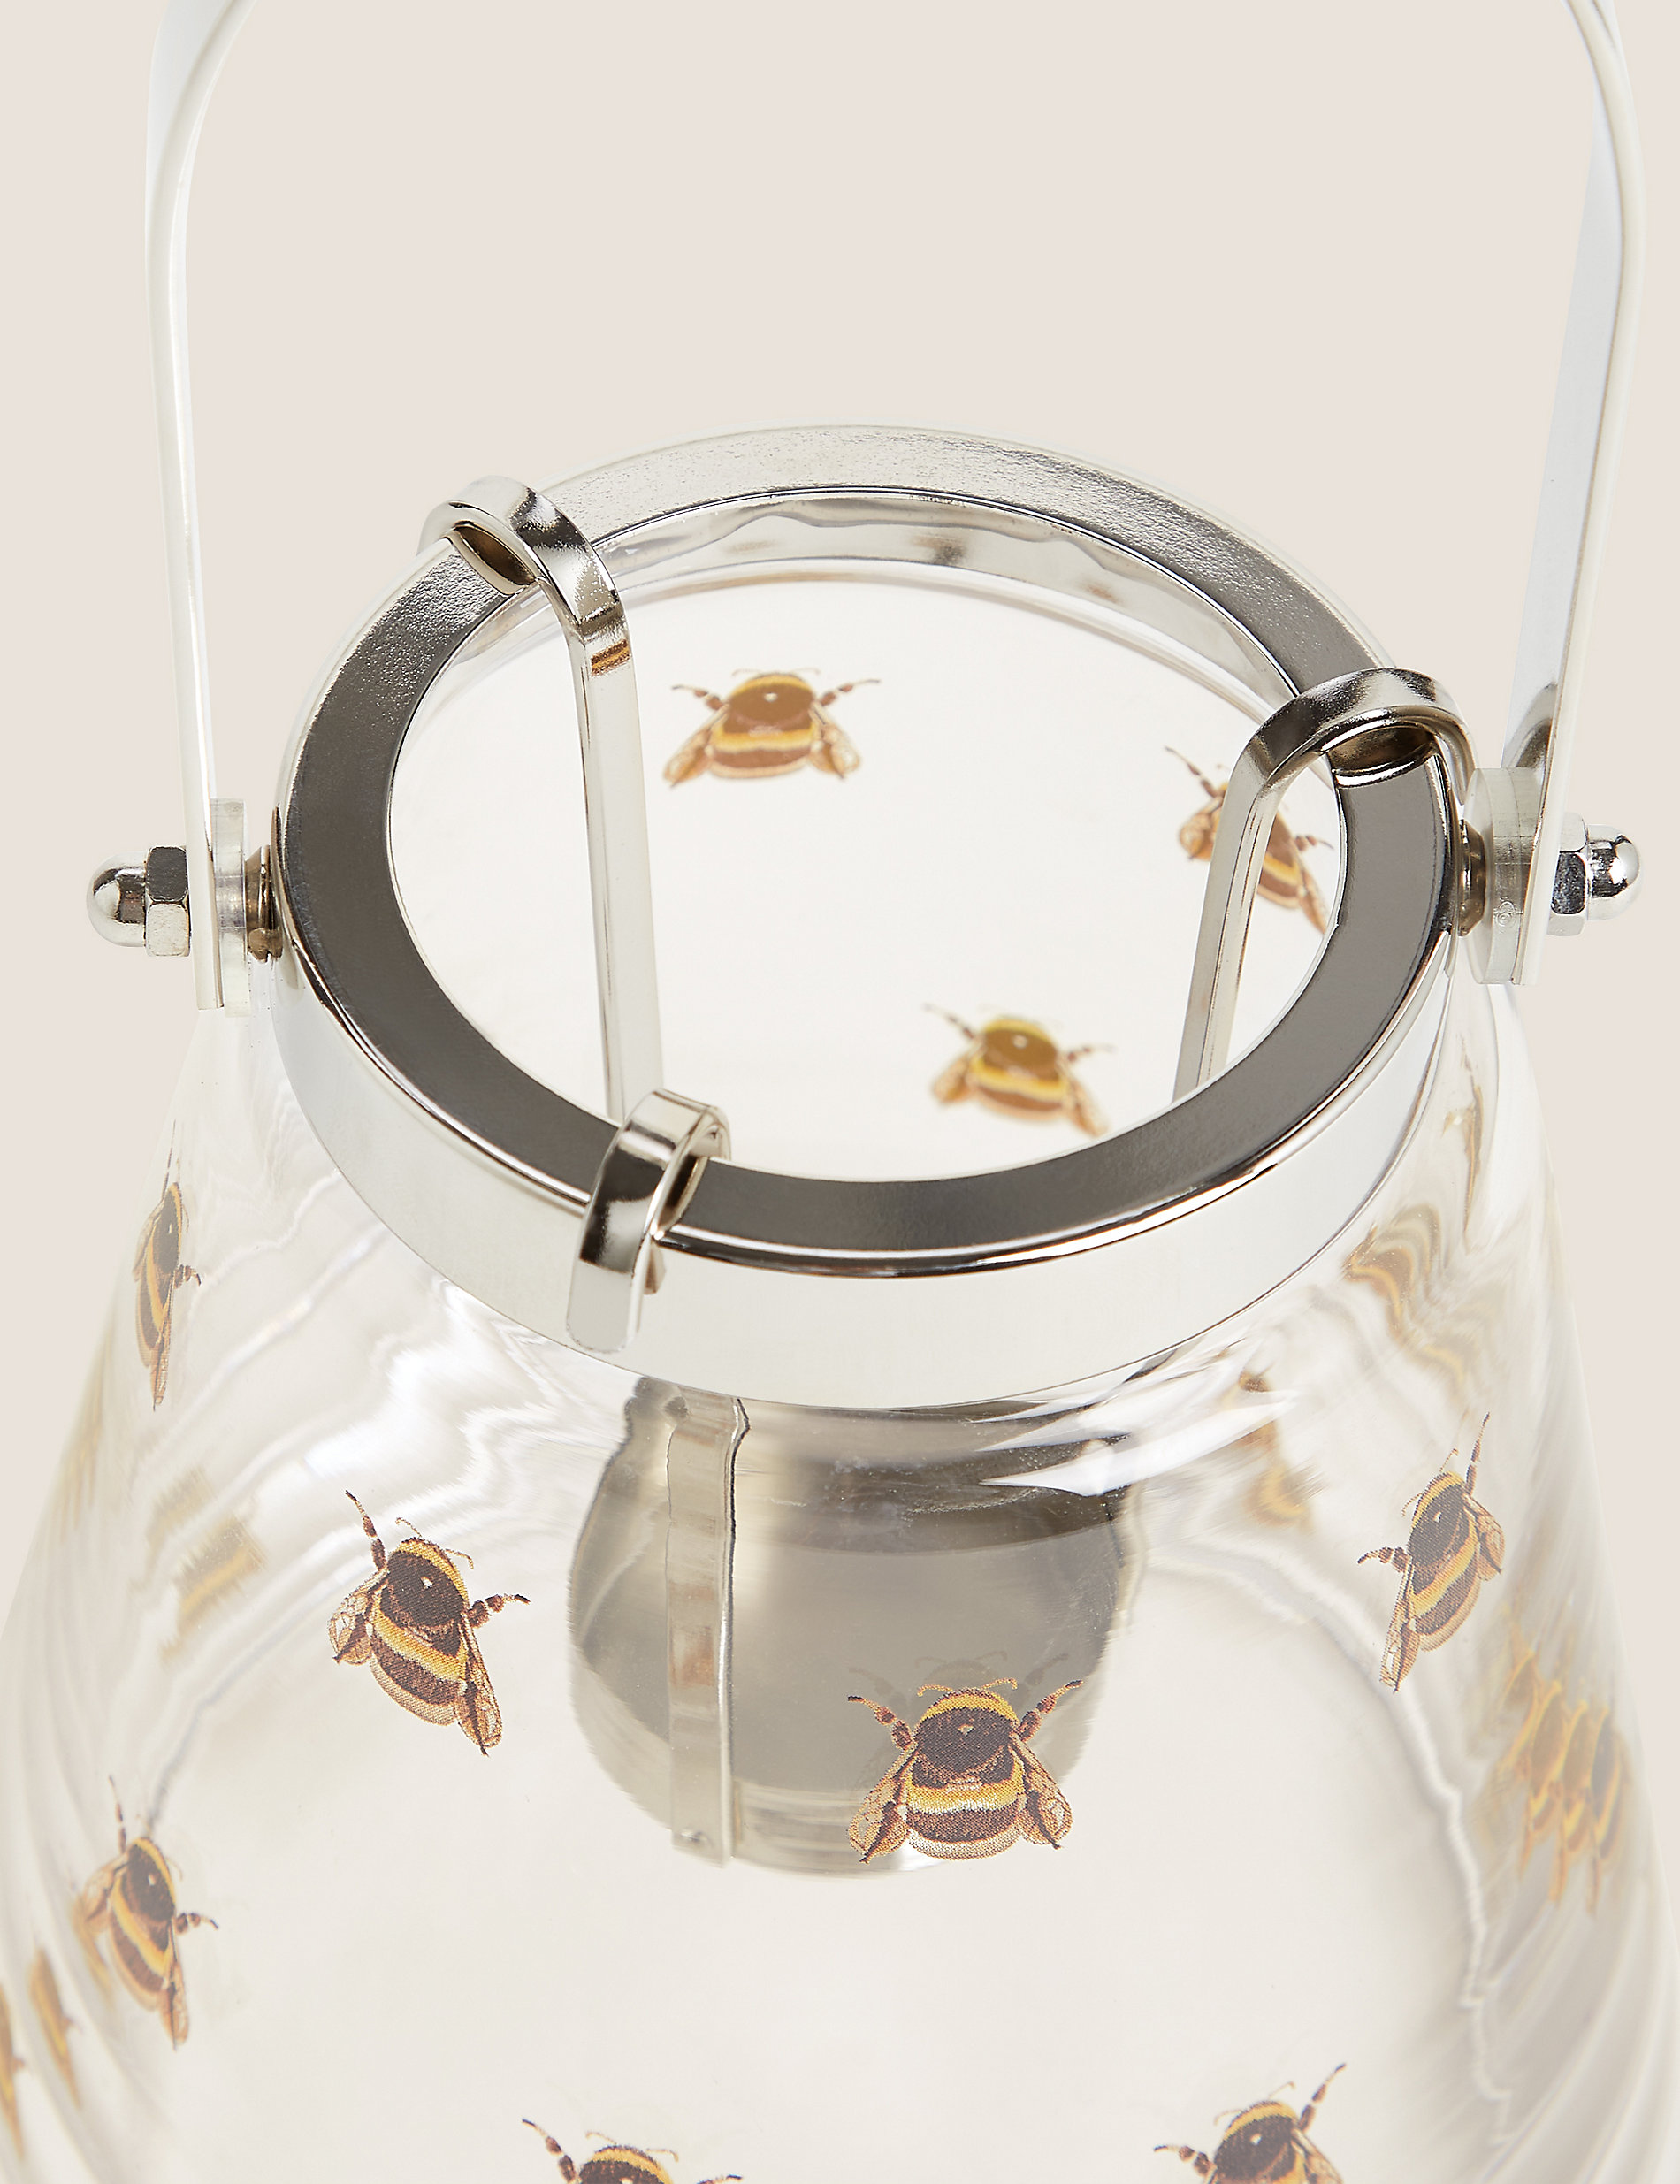 فانوس زجاجي متوسط الحجم بنقشة نحلة